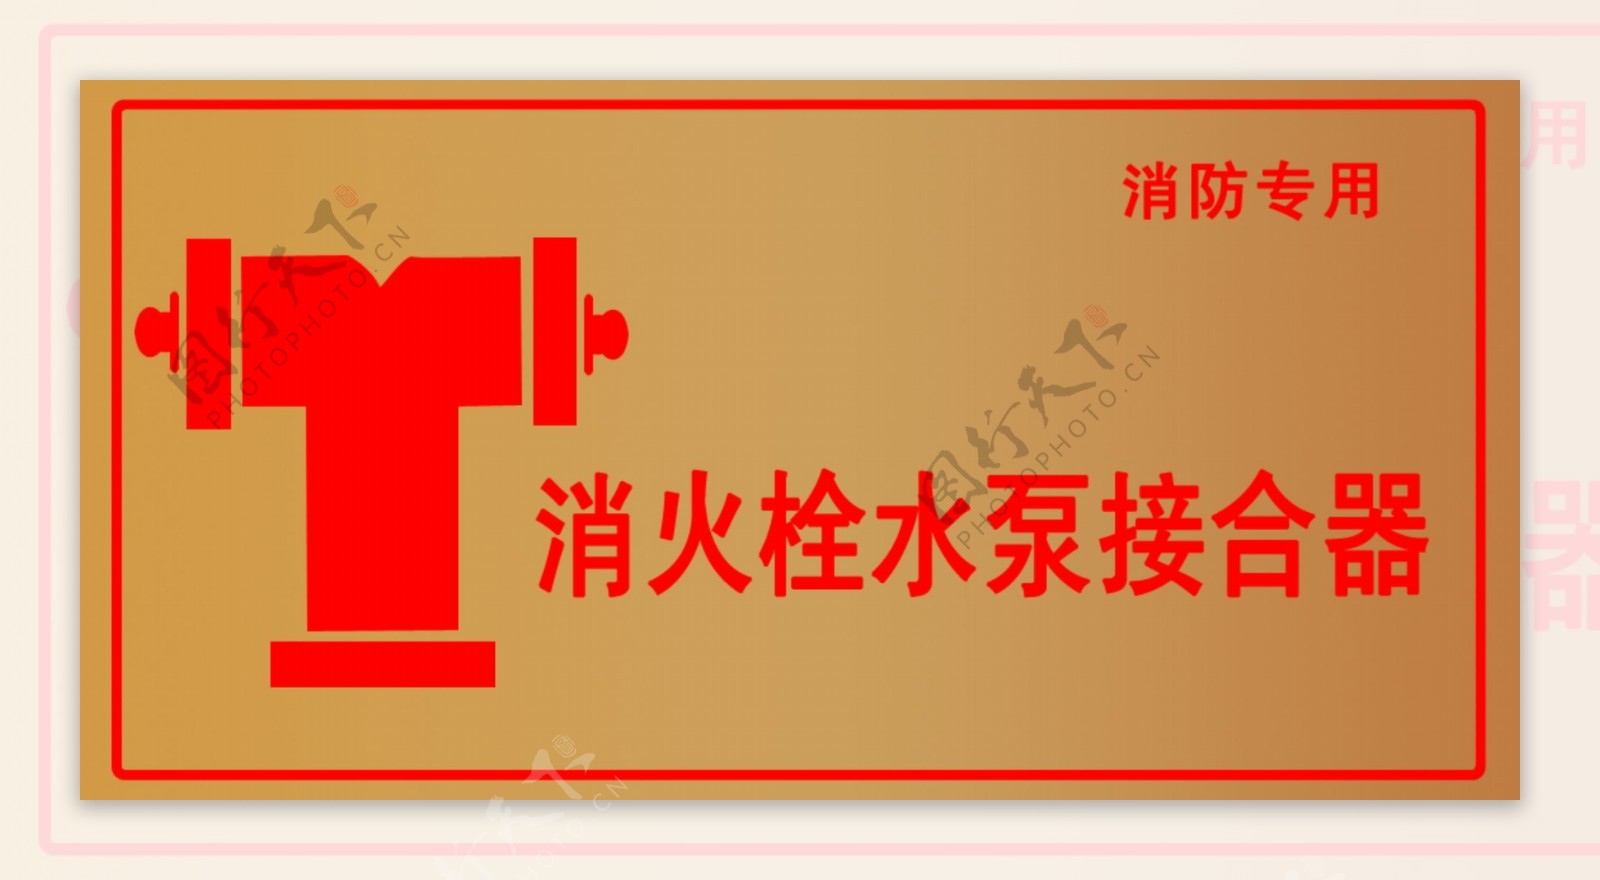 消火栓水泵接合器禁止标志图片